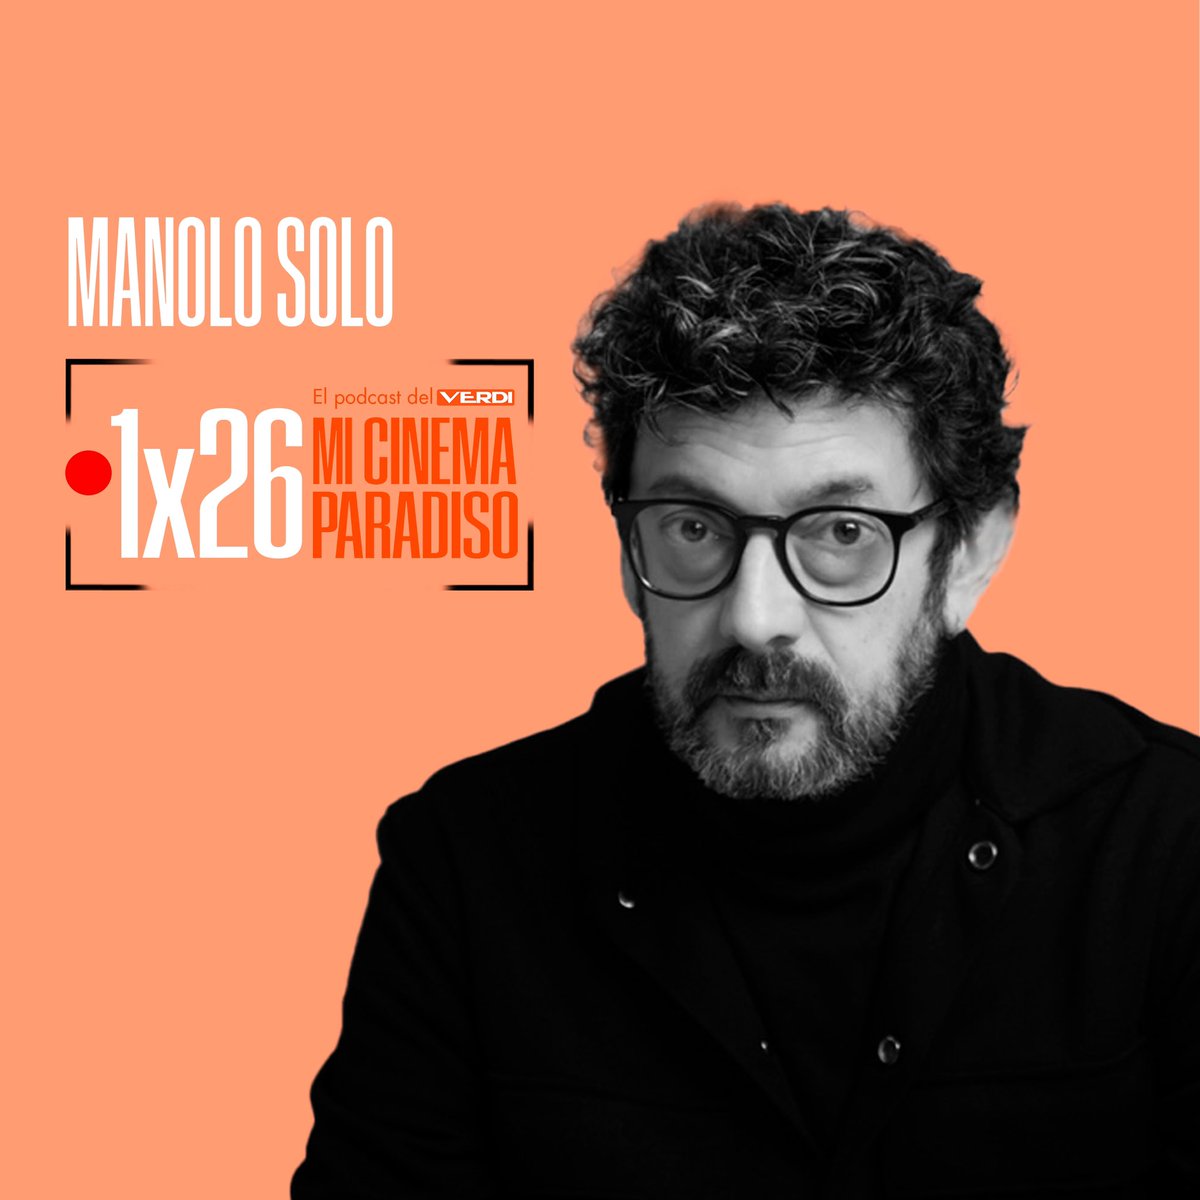 Nuevo eps de “MI CINEMA PARADISO, EL PODCAST DEL VERDI” por Eduardo de Vicente. #26 con Manolo Solo. Encuéntralo aquí: spoti.fi/3RyXfFz y +info en nuestra web.